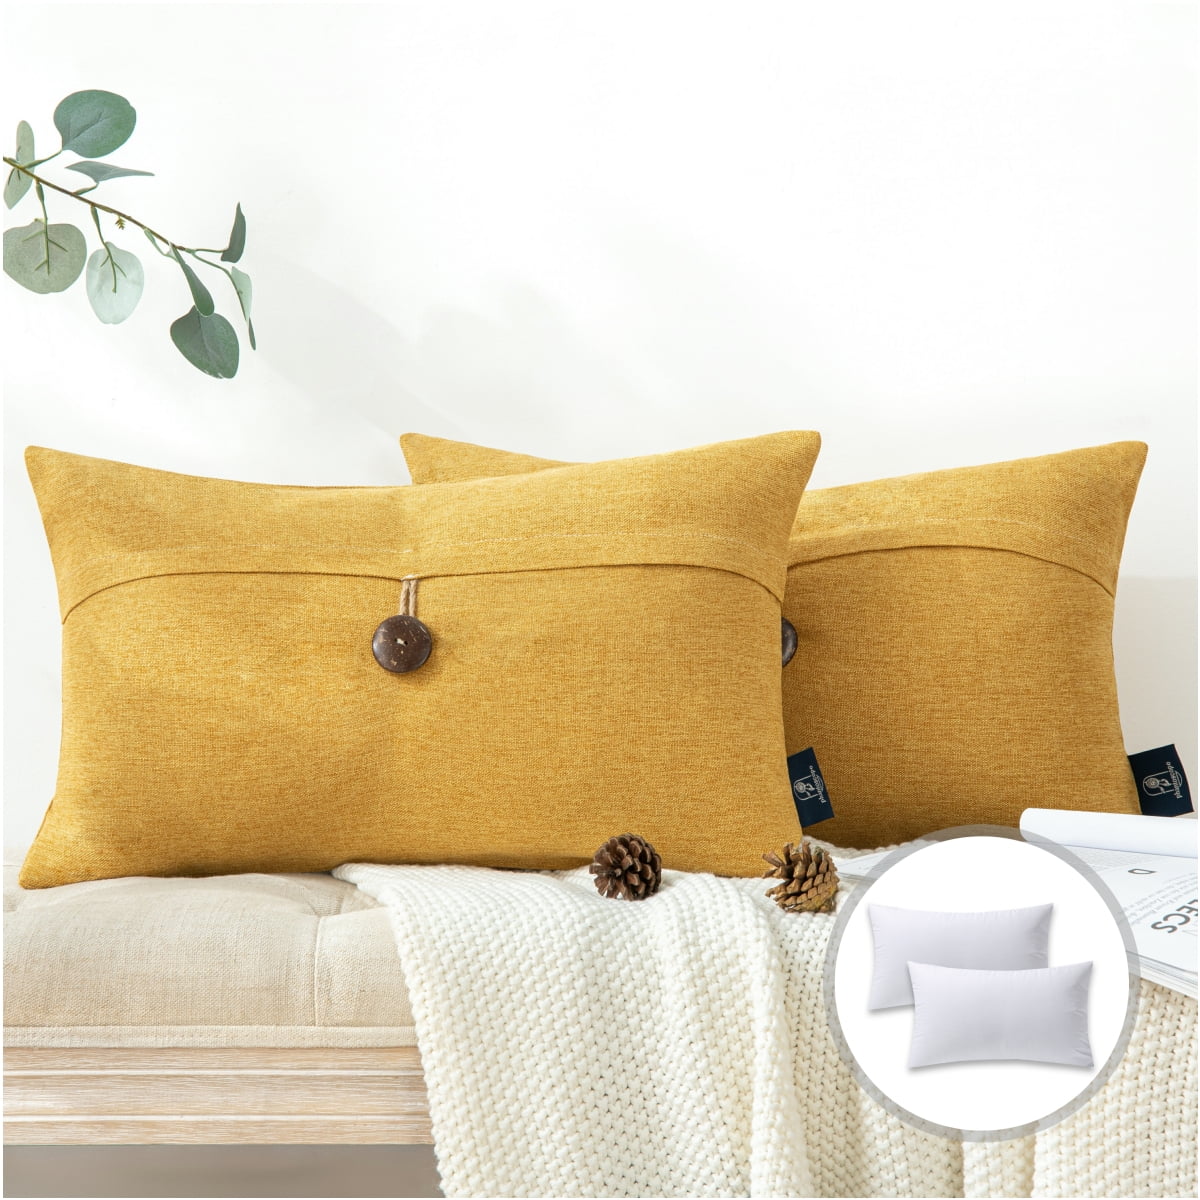 SureFit acquires major decorative pillow supplier